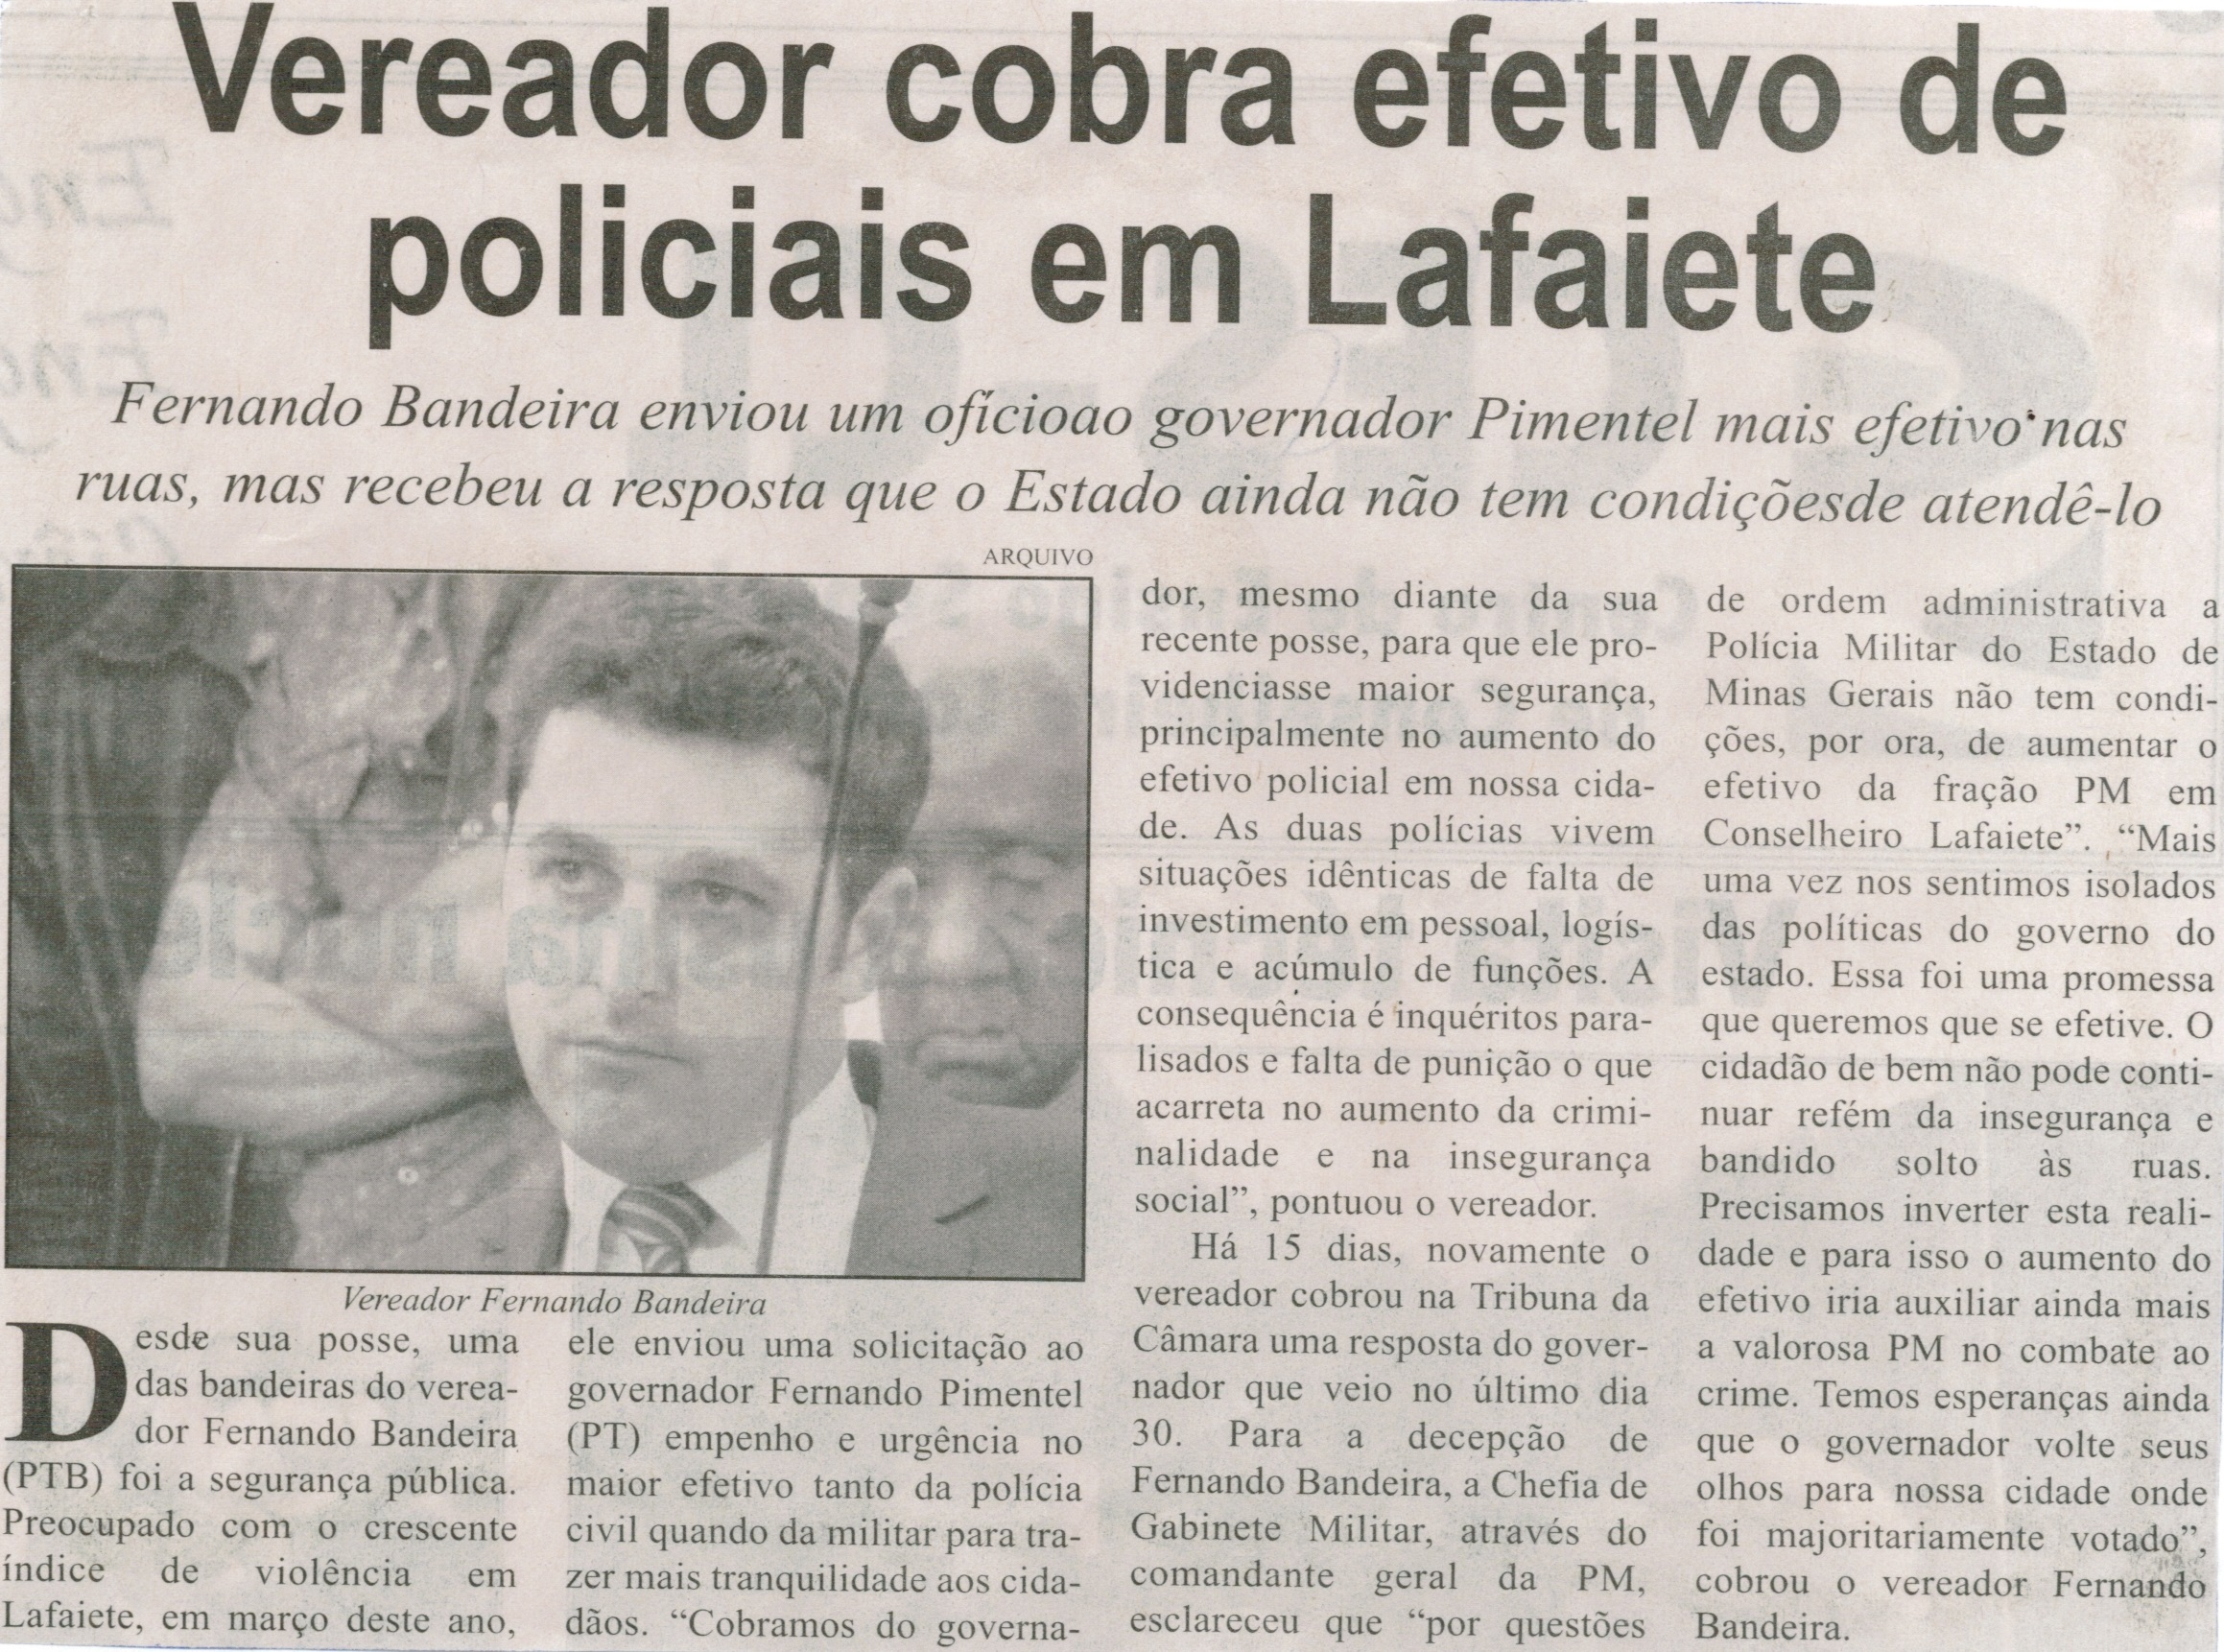 Vereador cobra efetivo de policiais em Lafaiete. Jornal Correio de Minas, Conselheiro Lafaiete, 15 ago. 2015, p. 06.